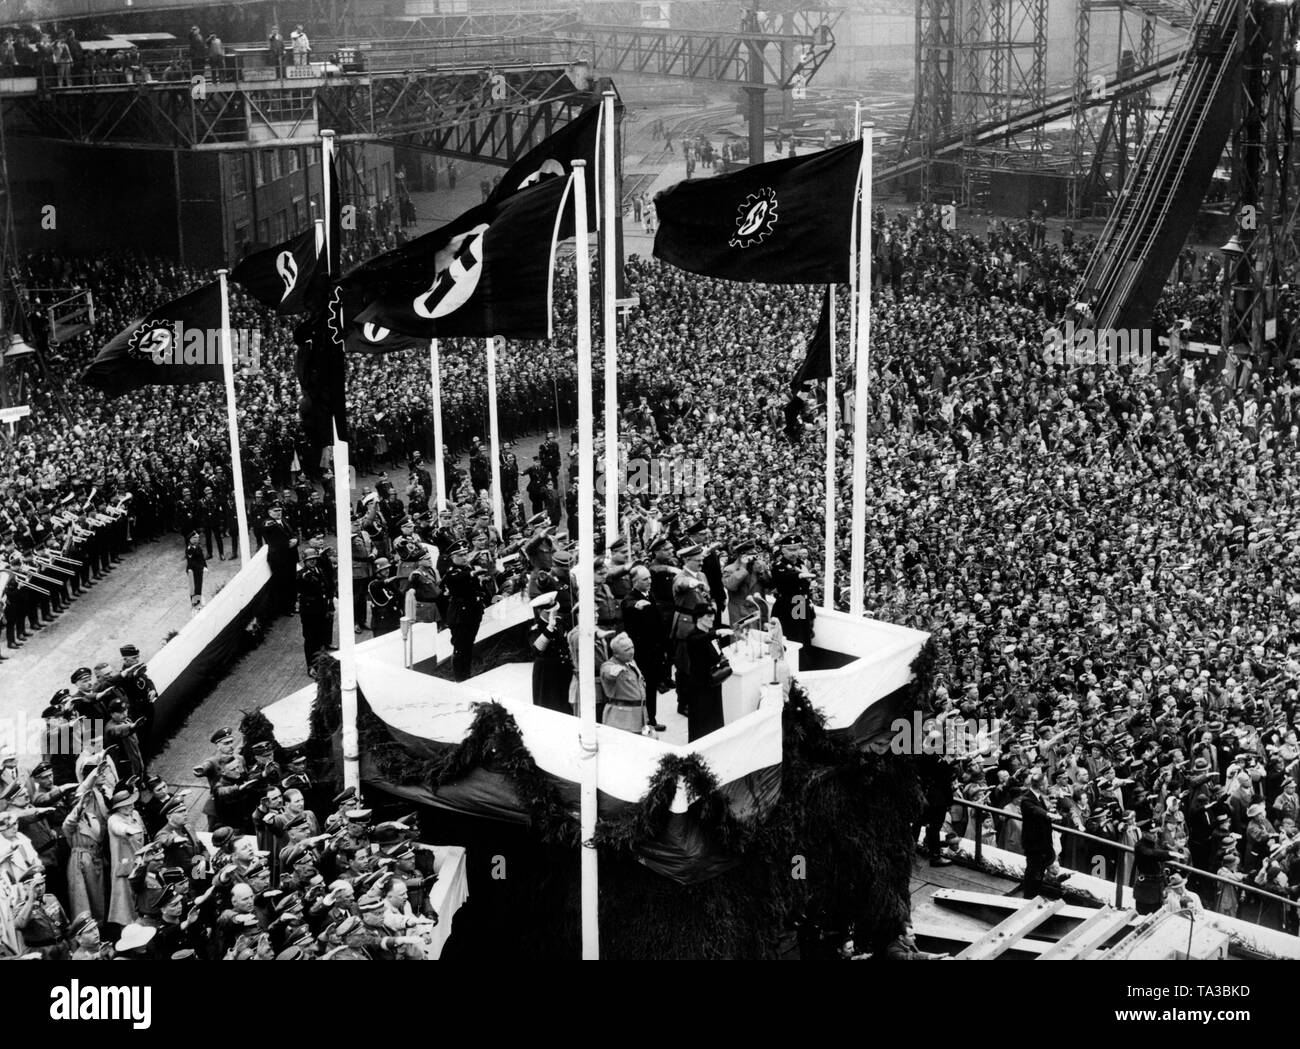 Durante el lanzamiento de la primera nave KdF, que fue nombrado después de la Swiss Landesgruppenleiter (grupo nacional líder), Wilhelm Gustloff, Nazi celebridades son recibidos con el saludo hitleriano sobre una plataforma de bautizo en la Blohm & Voss en el puerto de Hamburgo. De izquierda a derecha: Robert Ley, Eduvigis Gustloff (viuda de Wilhelm Gustloff ), Adolf Hitler, Heinrich Himmler. La bandera con la esvástica y la bandera del Frente de trabajo alemán están soplando. Foto de stock